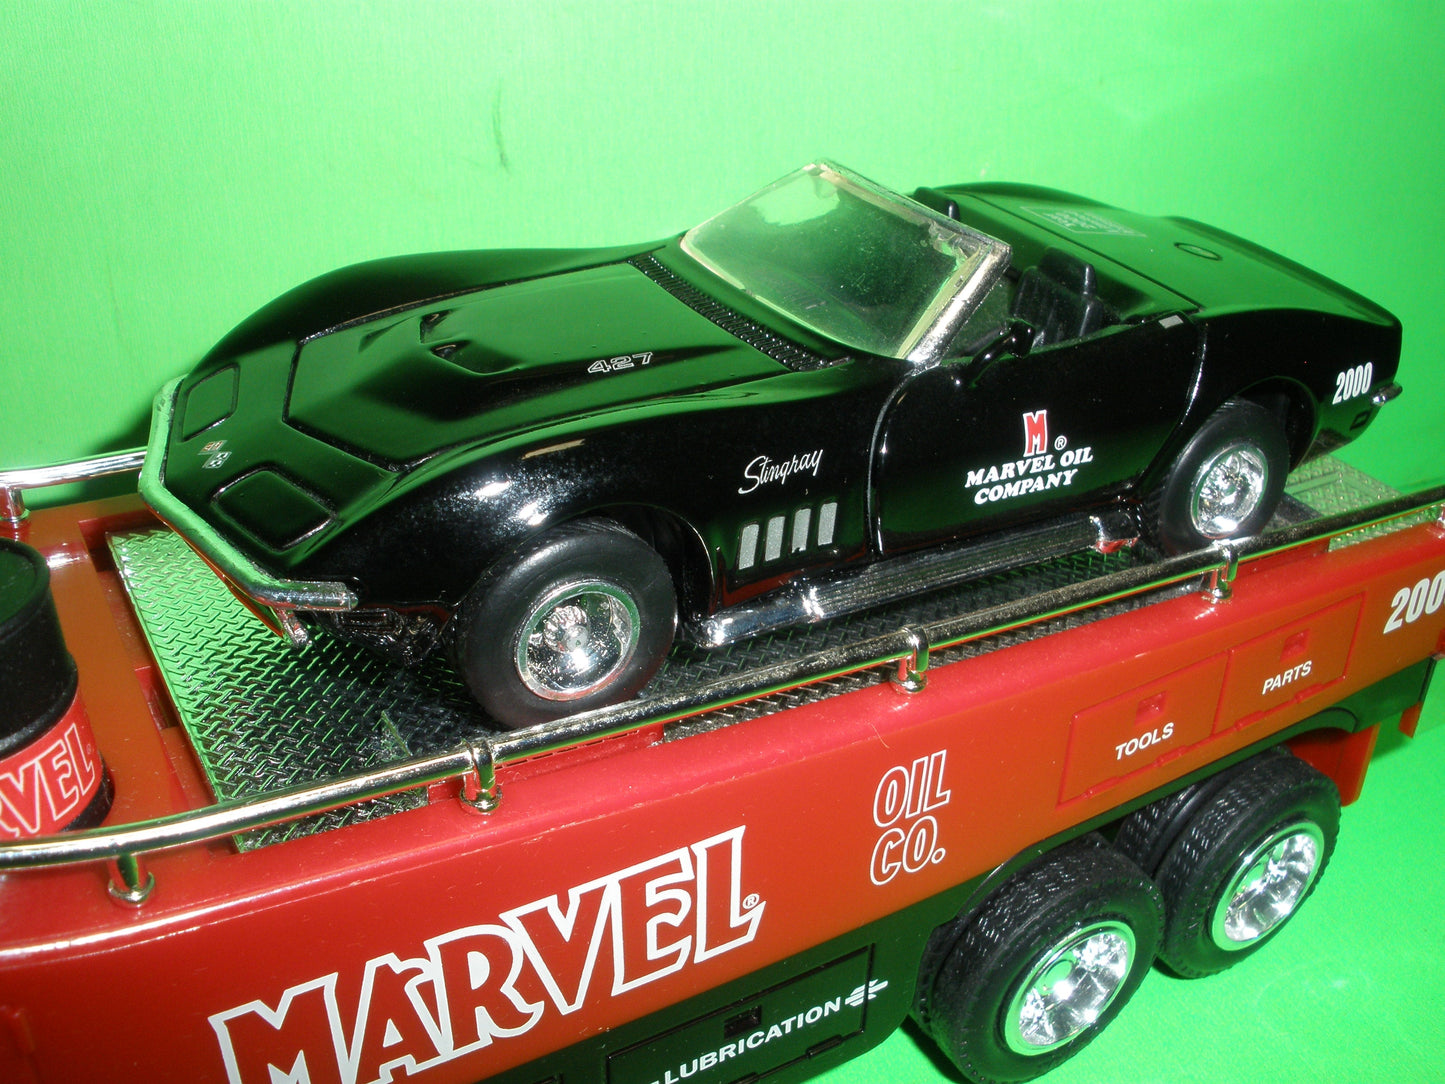 2000 Marvel Mystery Oil Car Carrier Truck & Chevrolet Corvette